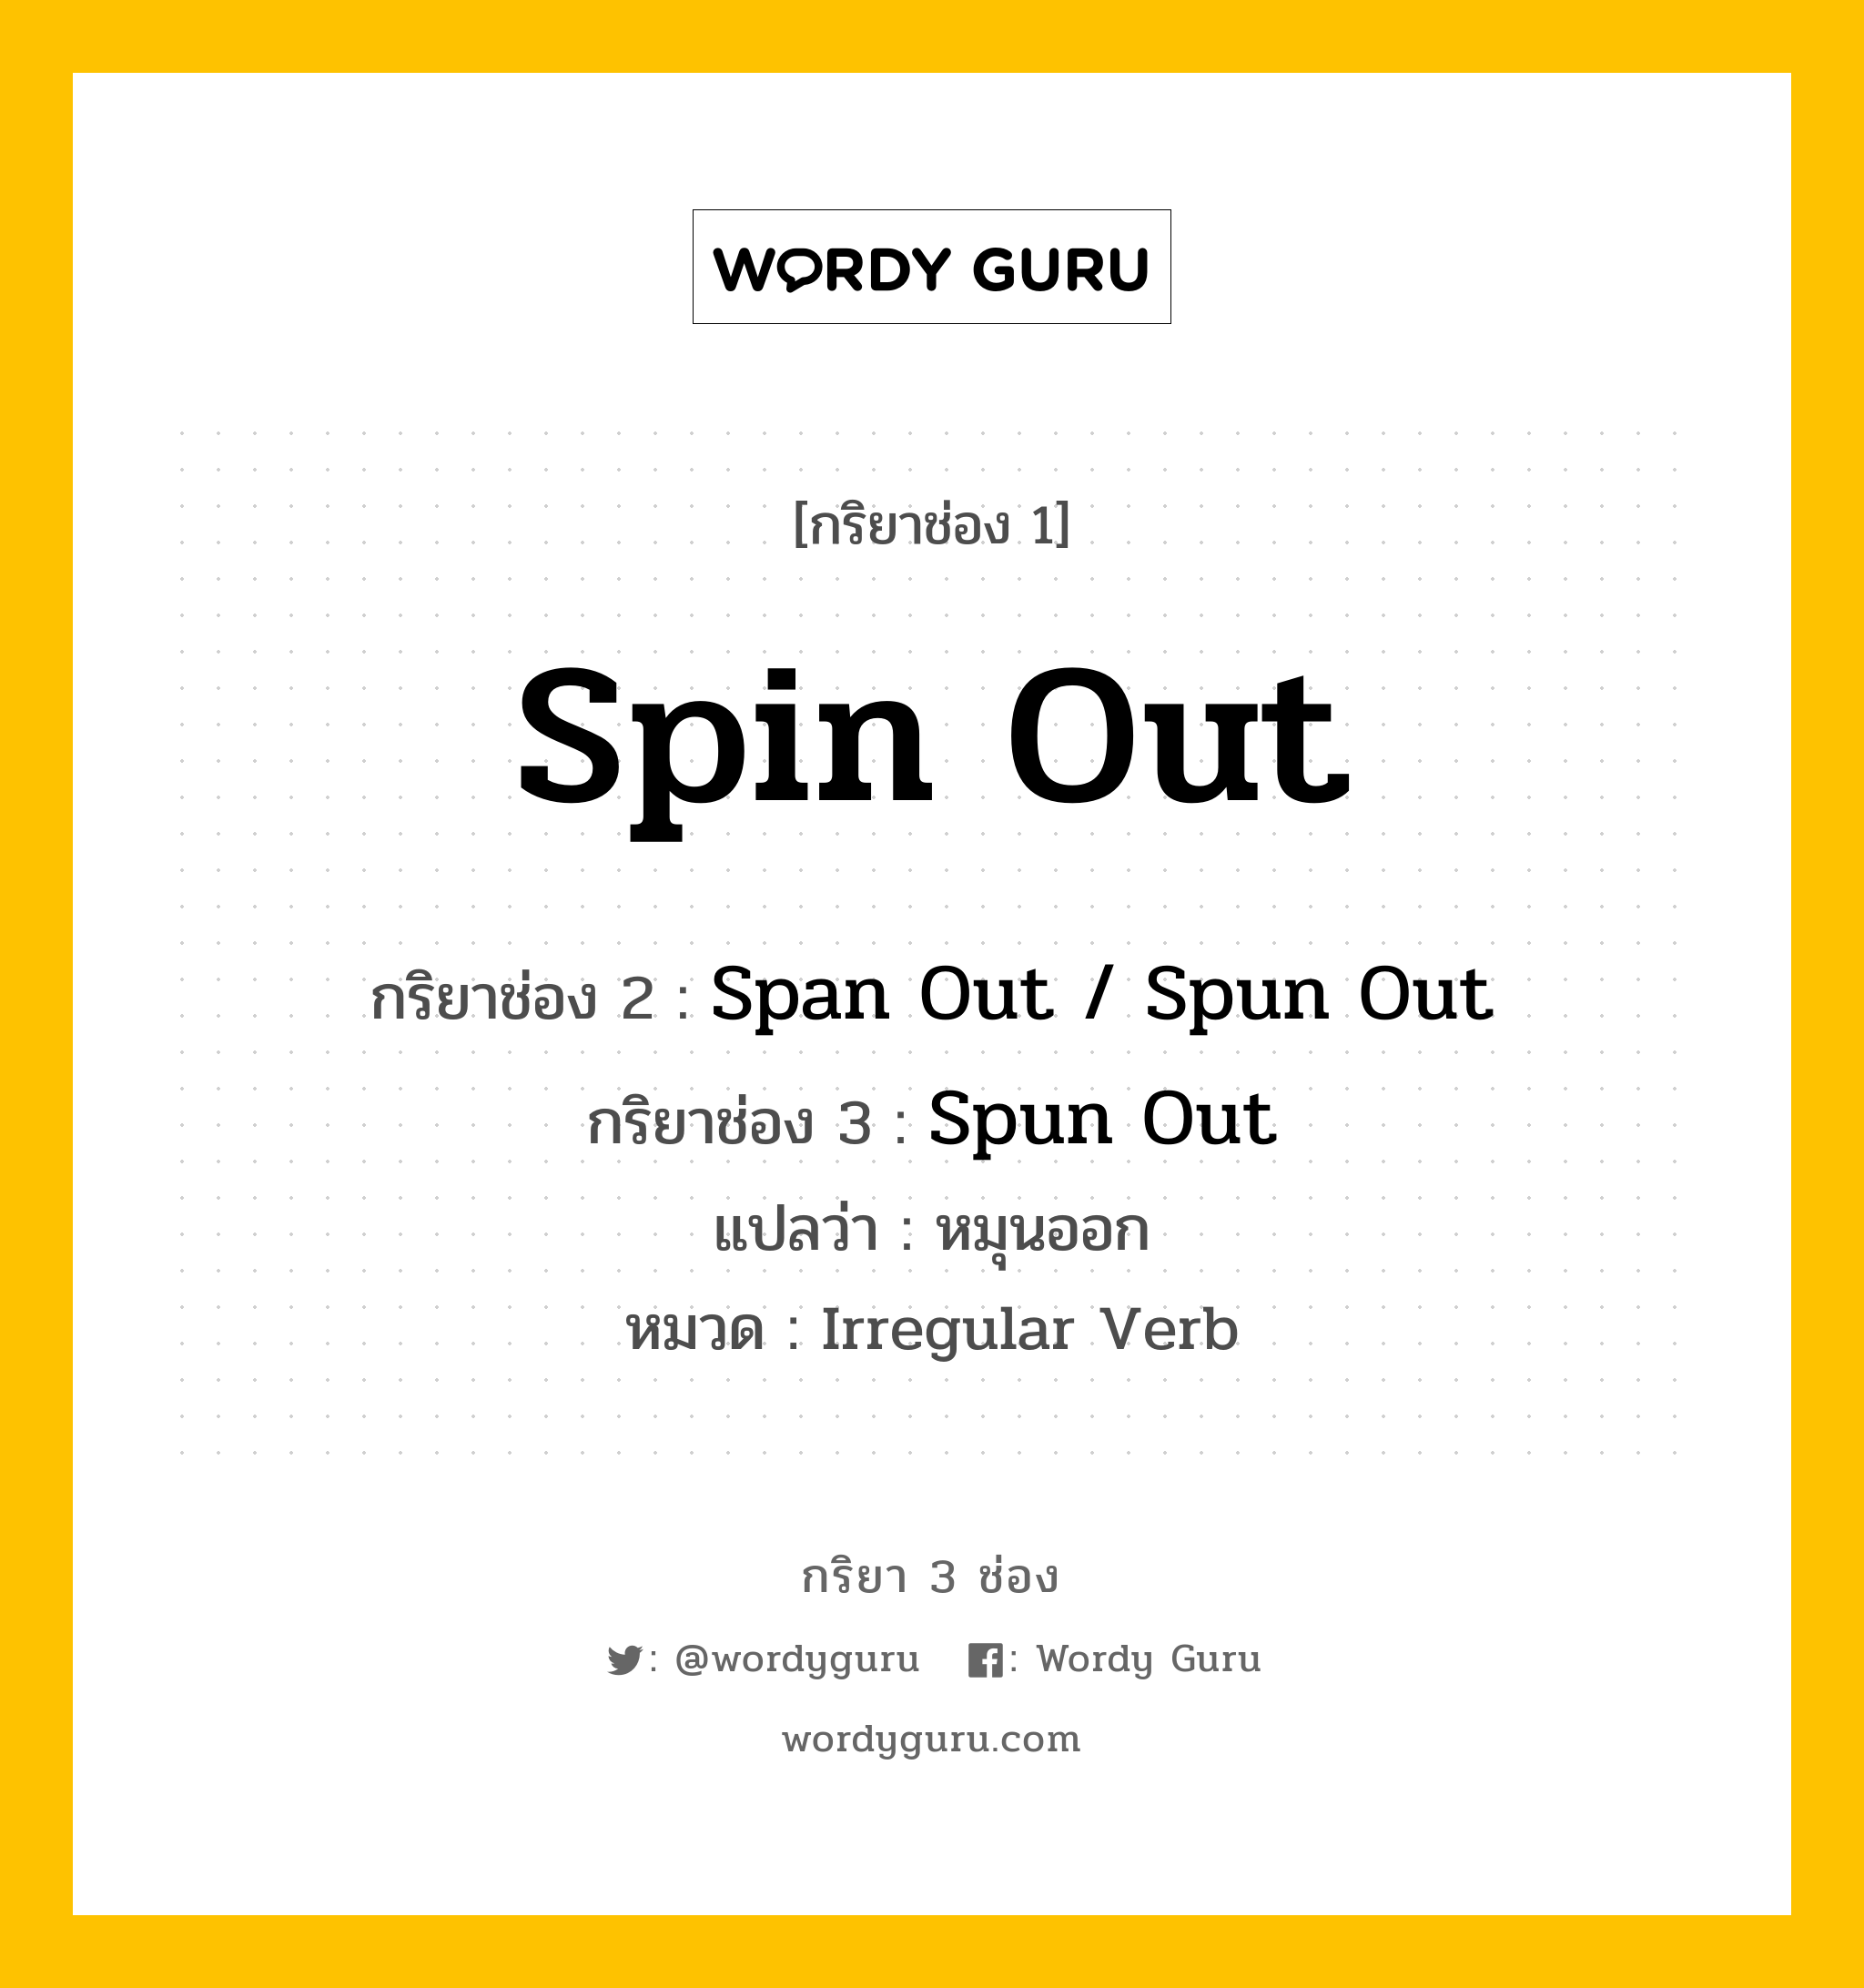 กริยา 3 ช่อง: Spin Out ช่อง 2 Spin Out ช่อง 3 คืออะไร, กริยาช่อง 1 Spin Out กริยาช่อง 2 Span Out / Spun Out กริยาช่อง 3 Spun Out แปลว่า หมุนออก หมวด Irregular Verb หมวด Irregular Verb